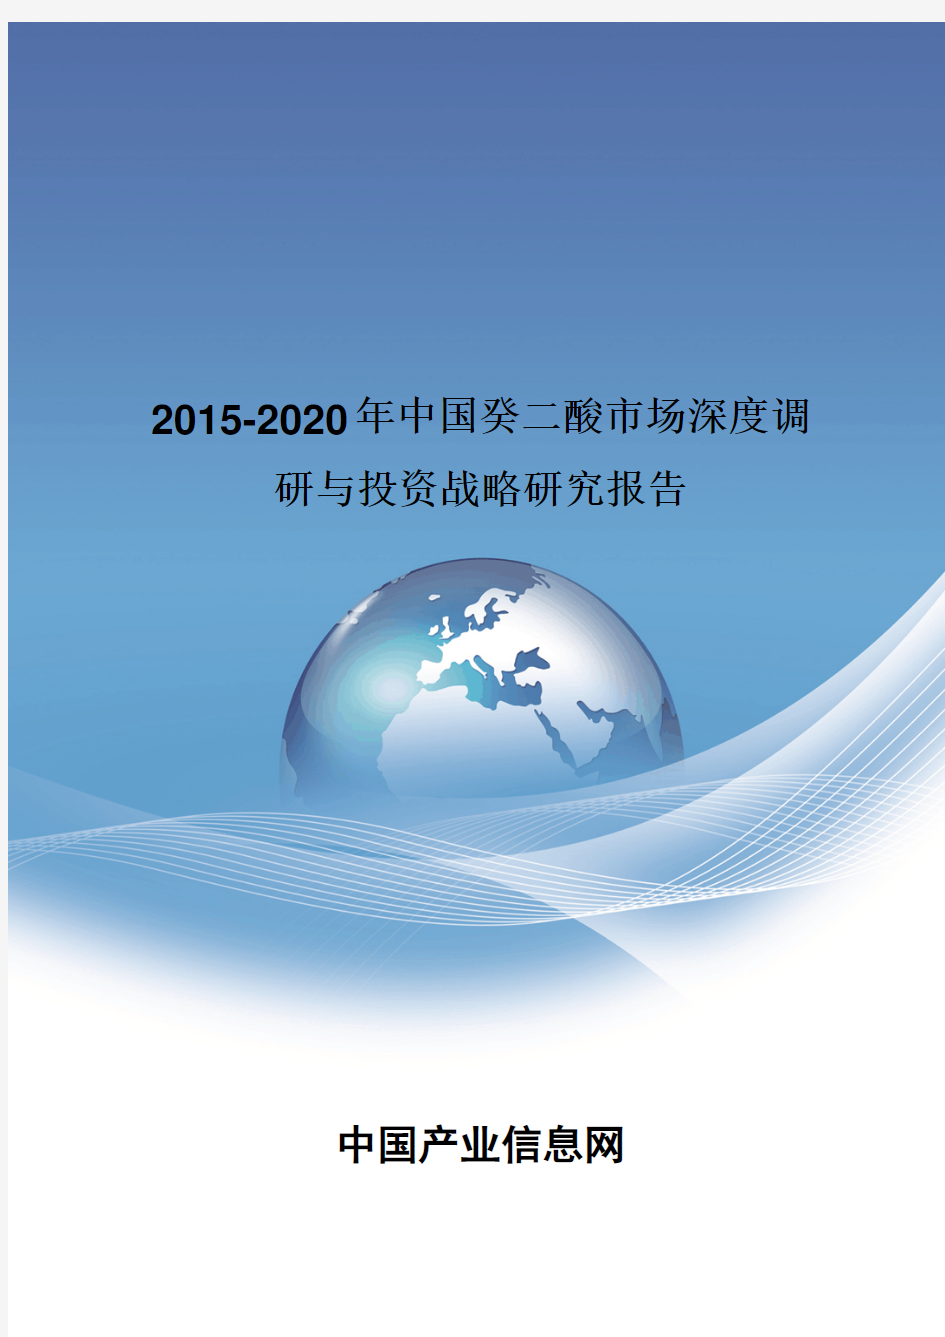 2015-2020年中国癸二酸市场深度调研报告